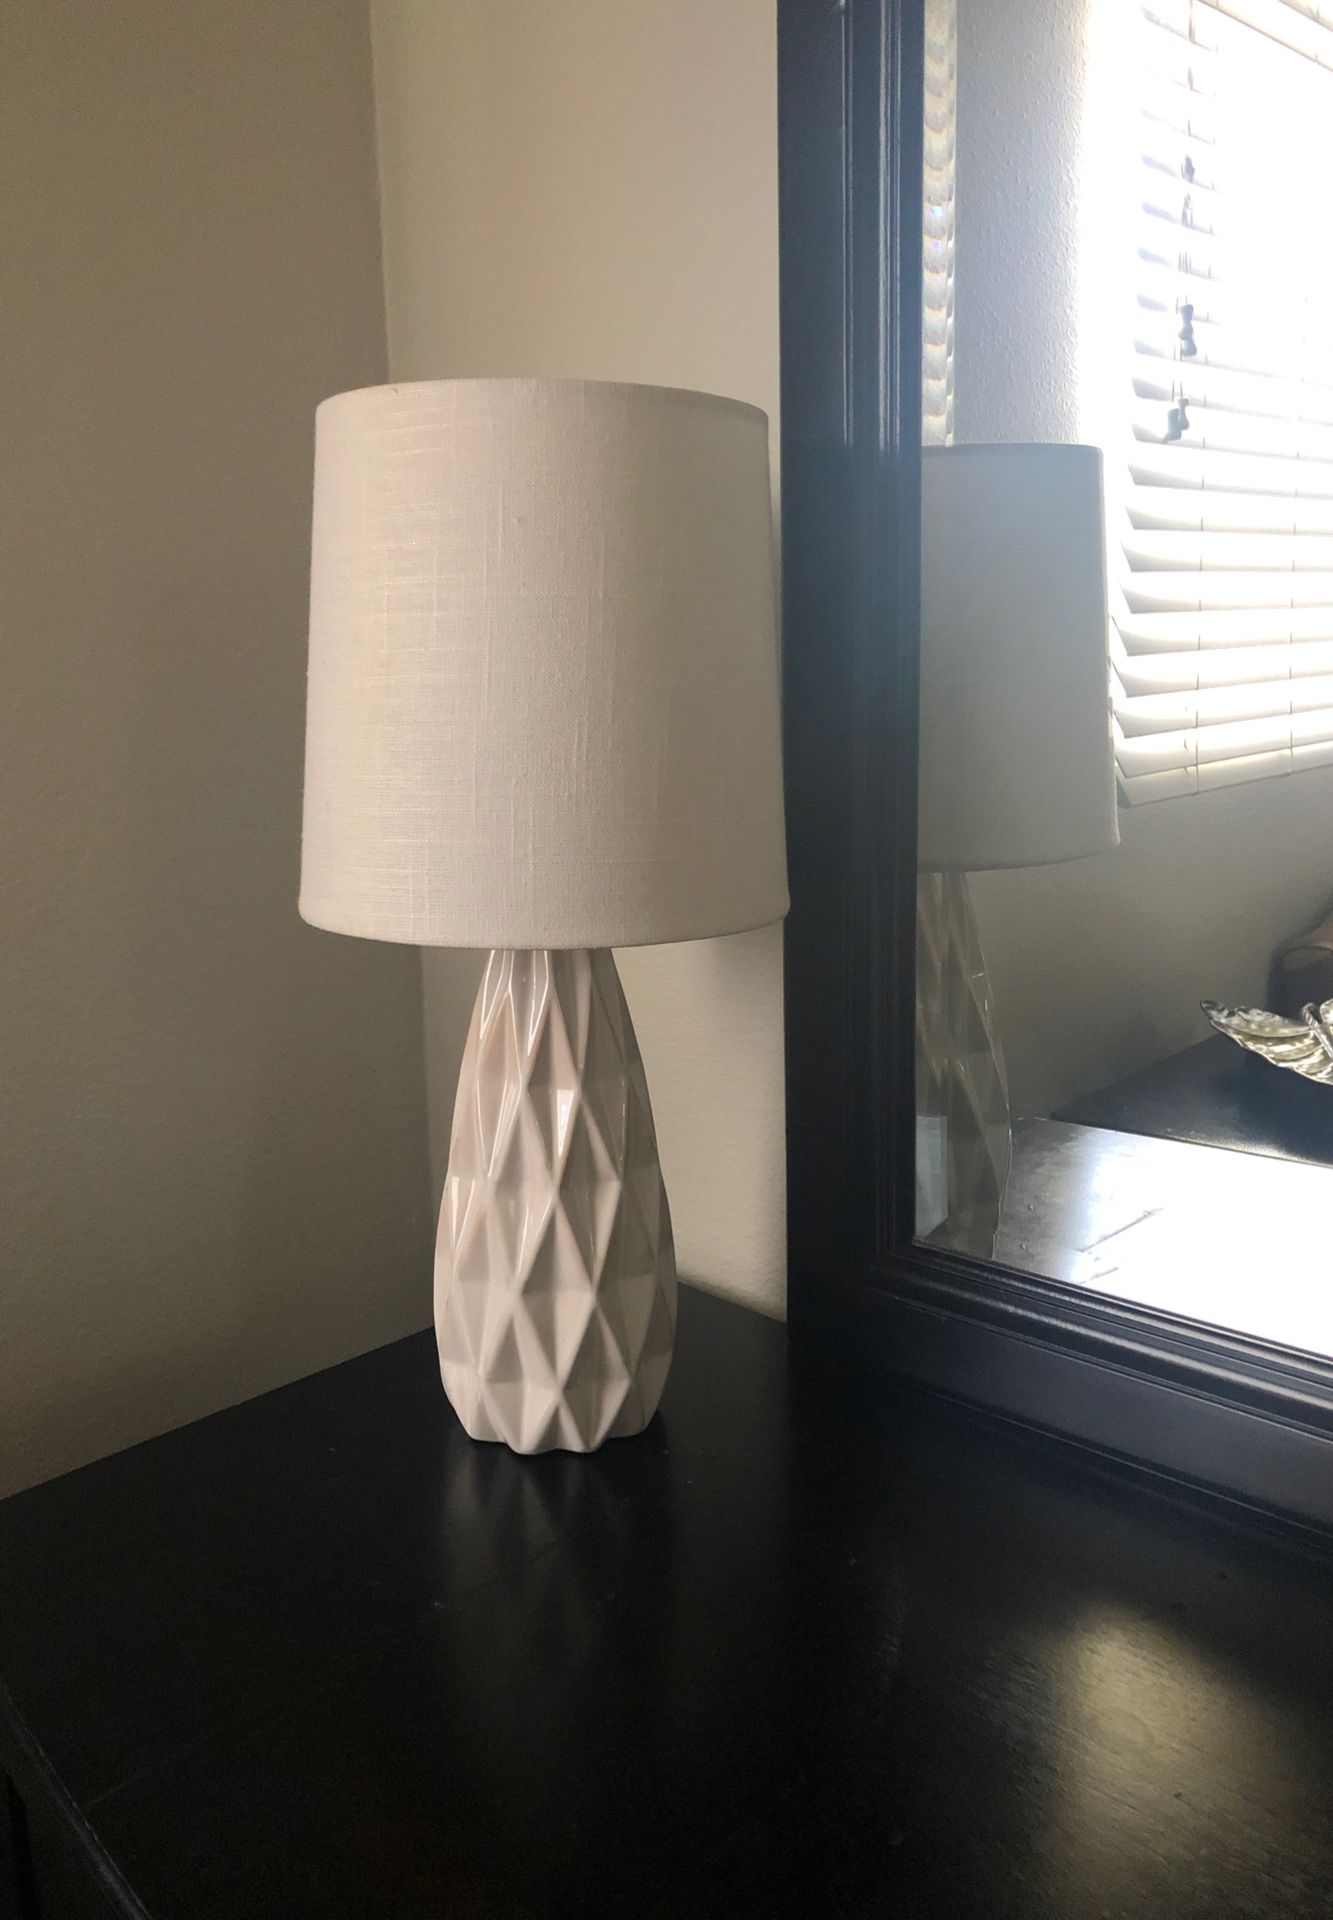 Beautiful stylish white lamp